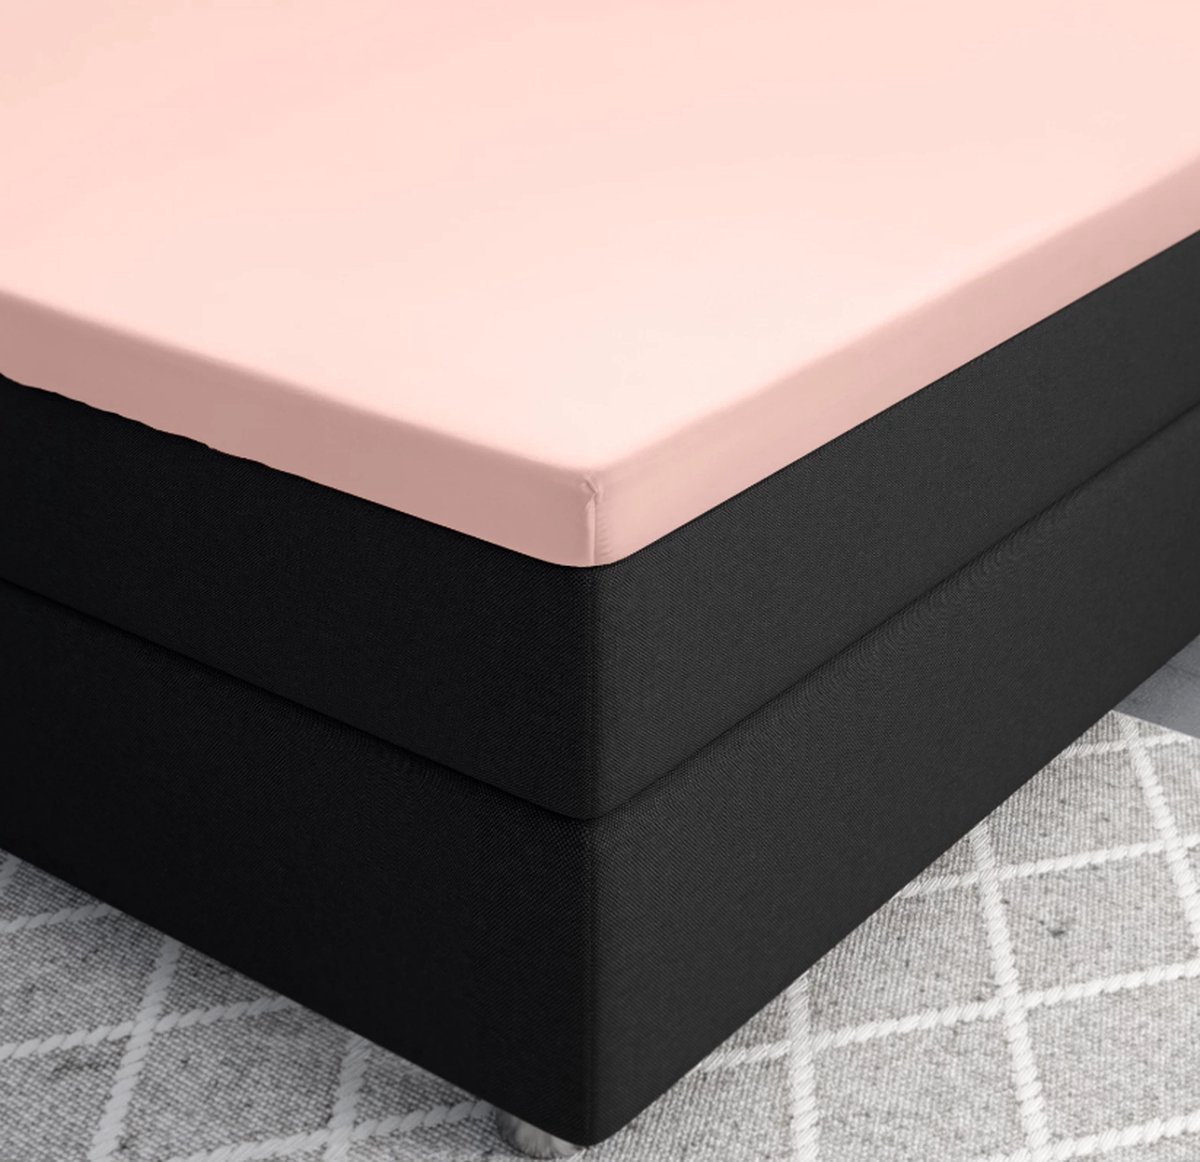 Premium katoen/satijn hoeslaken roze - 70x200 (eenpersoons) - zacht en ademend - luxe en chique uitstraling - subtiele glans - ideale pasvorm